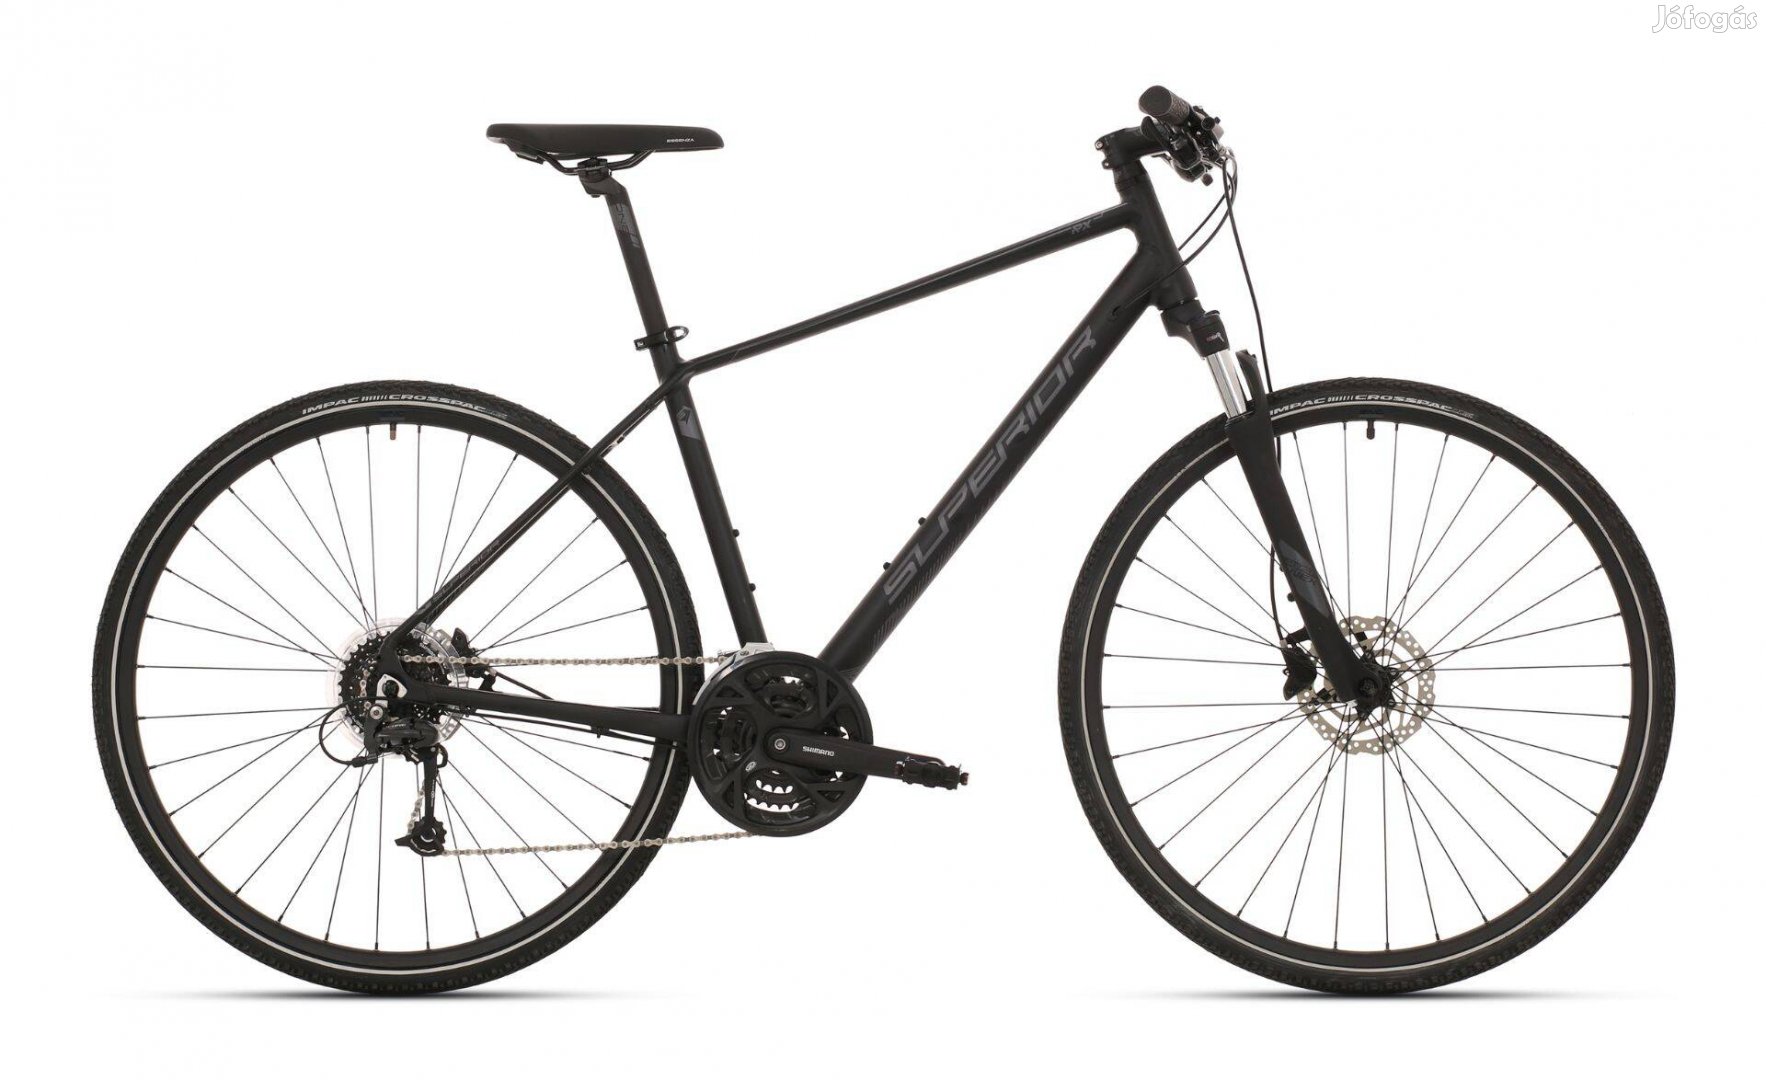 Eladó: Superior Cross RX 570 kerékpár